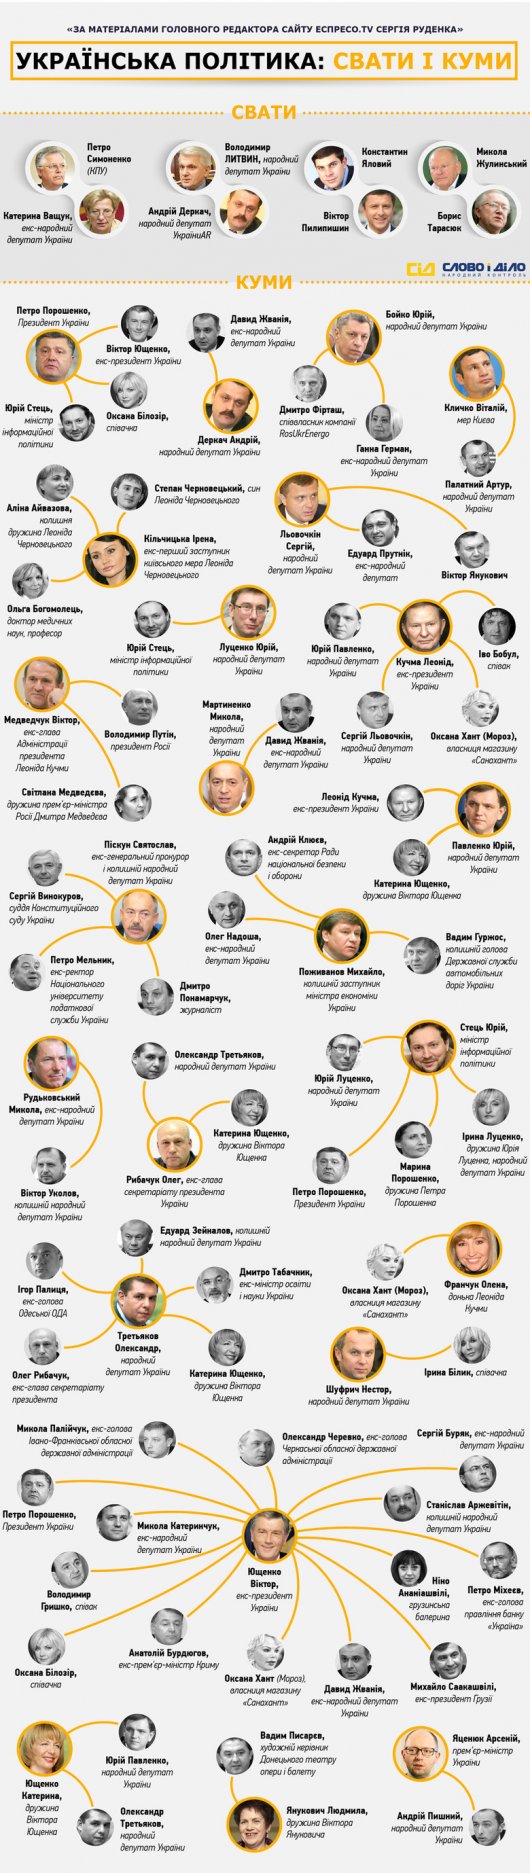 Політичне кумівство: хто кому кум і сват в українській політиці